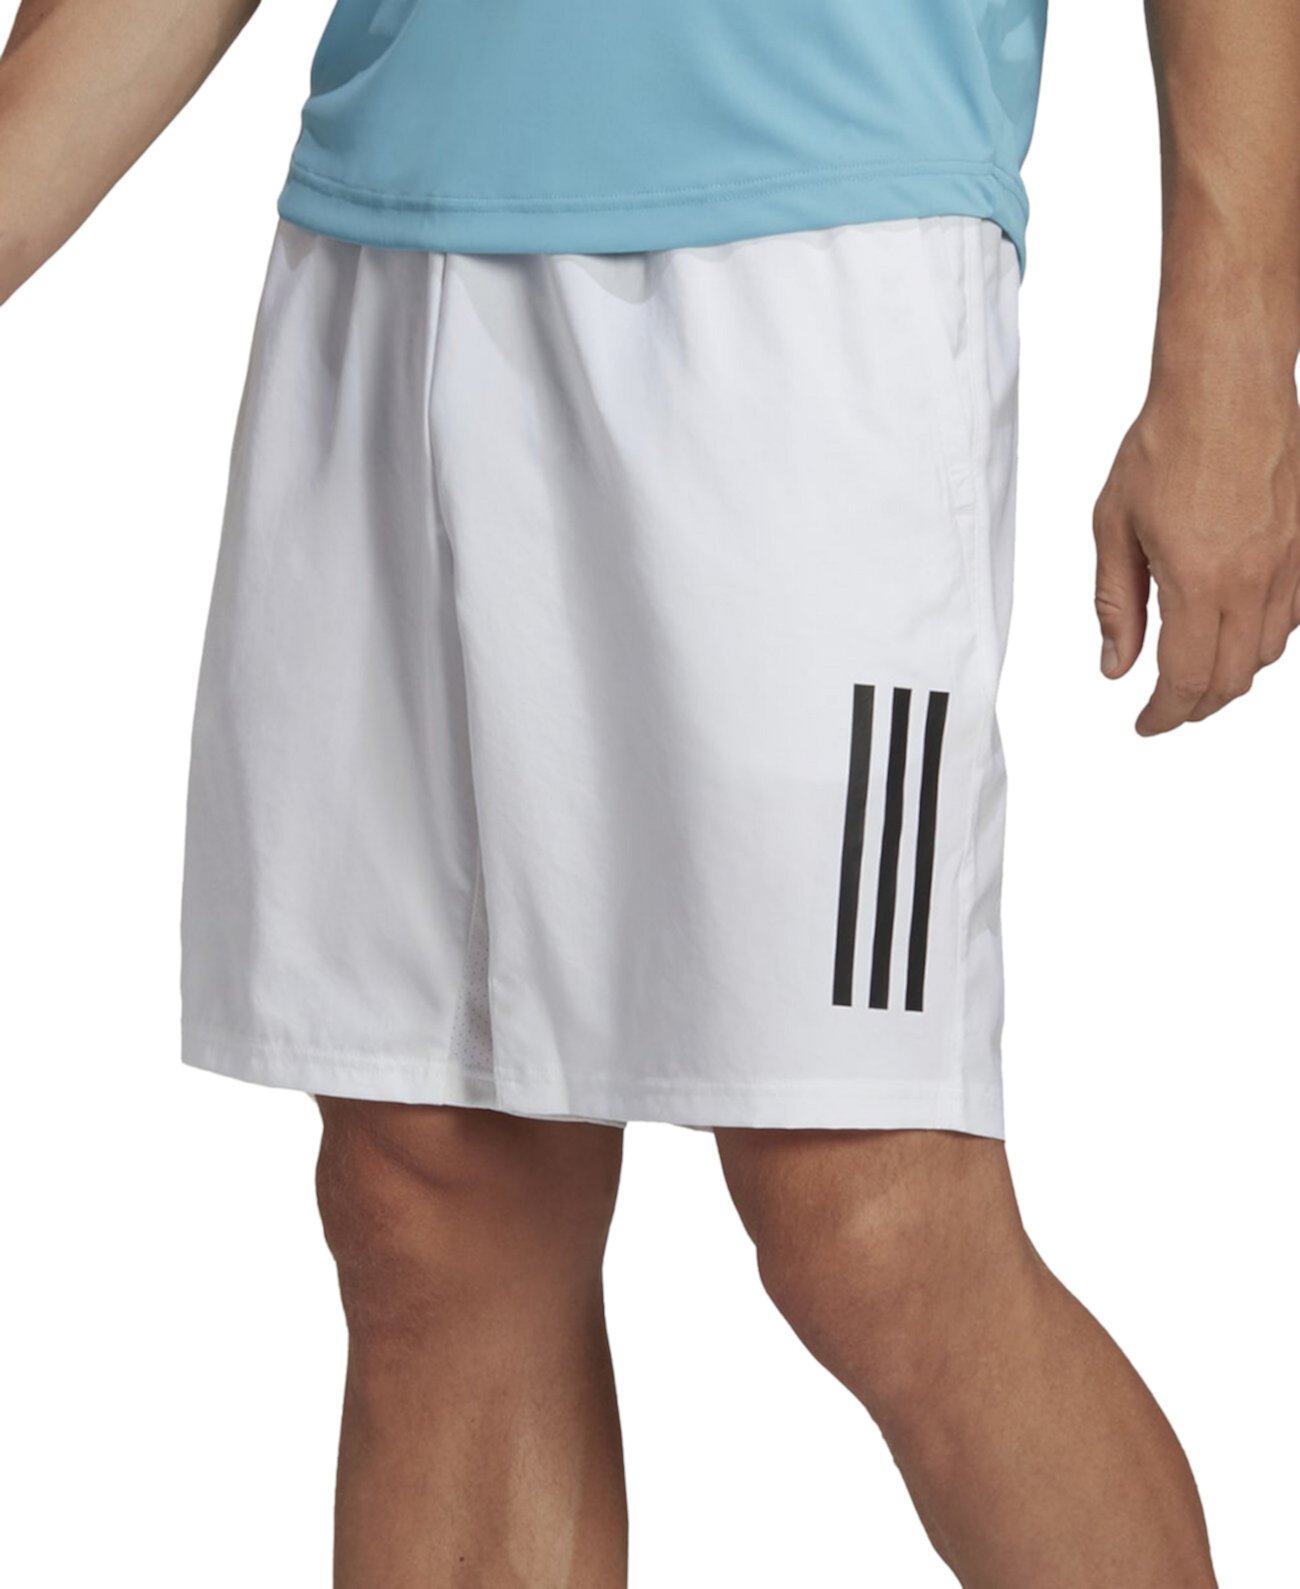 Мужские теннисные шорты с 3 полосками для клуба 9 дюймов Adidas